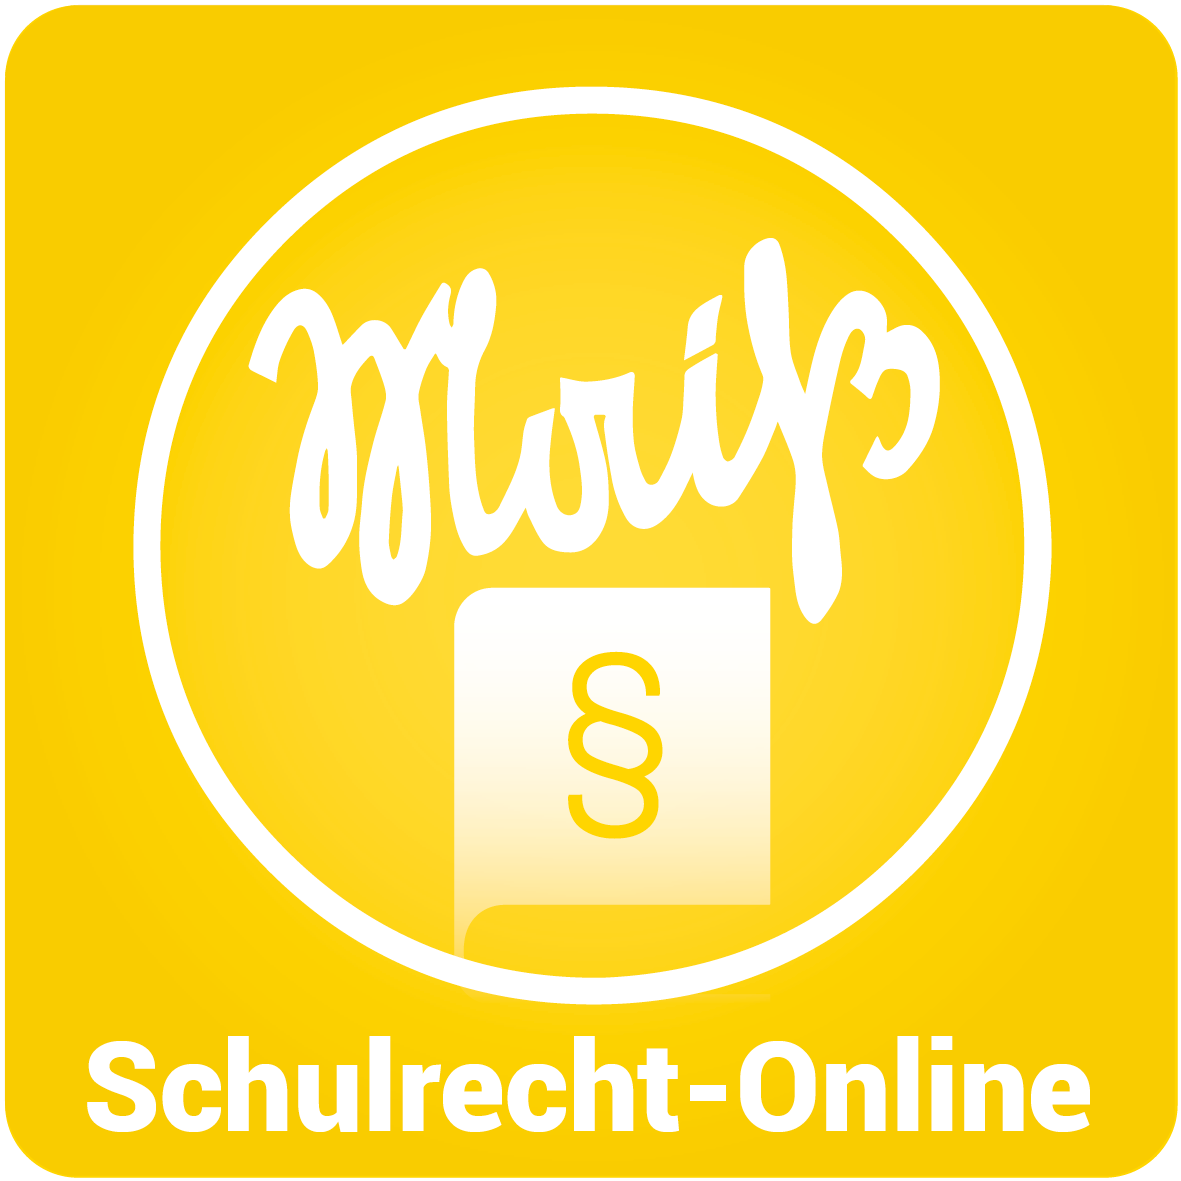 schulrecht-online.png